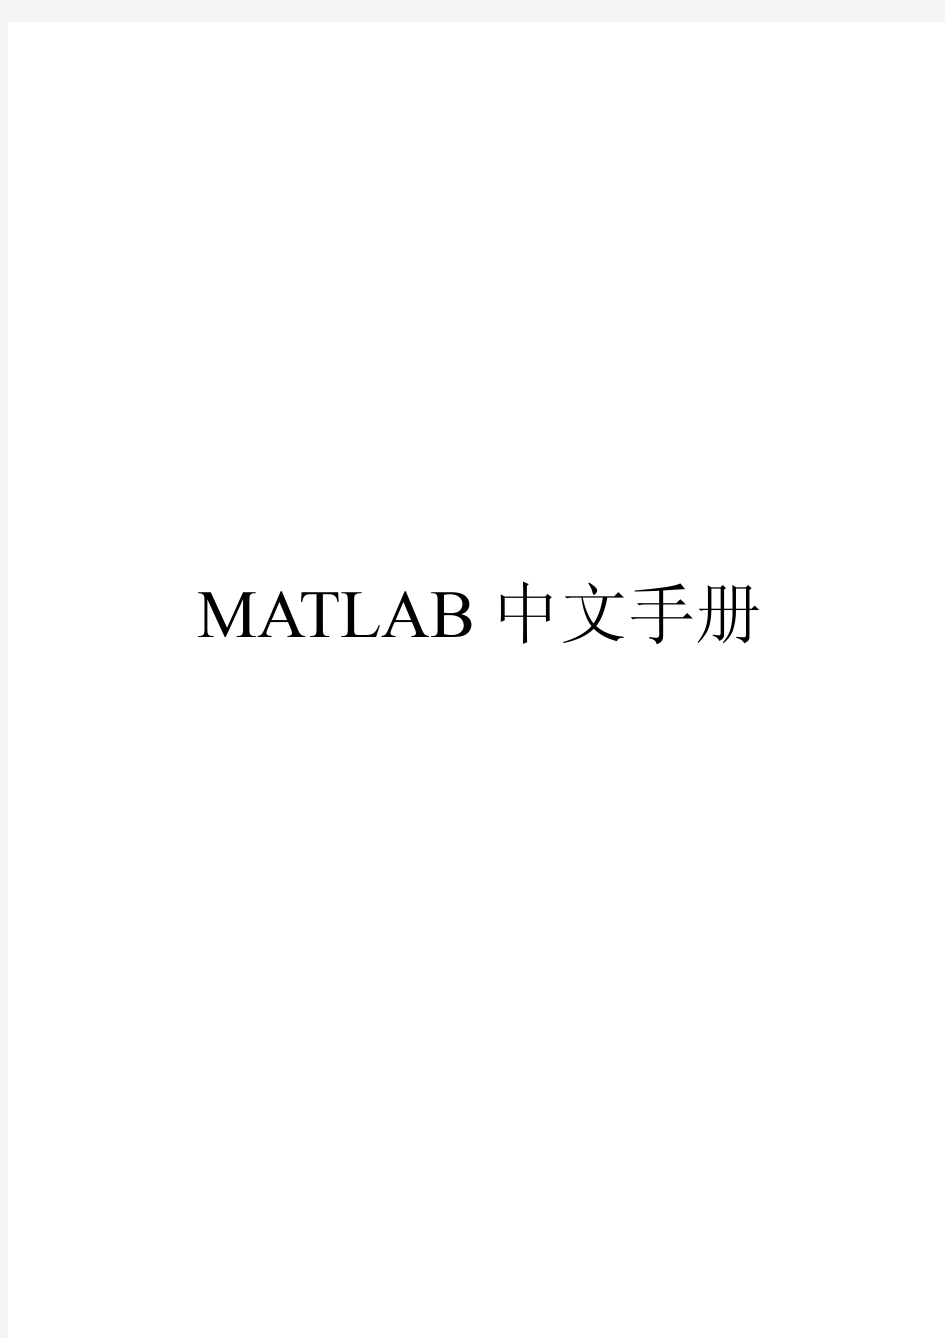 MATLAB实用中文手册